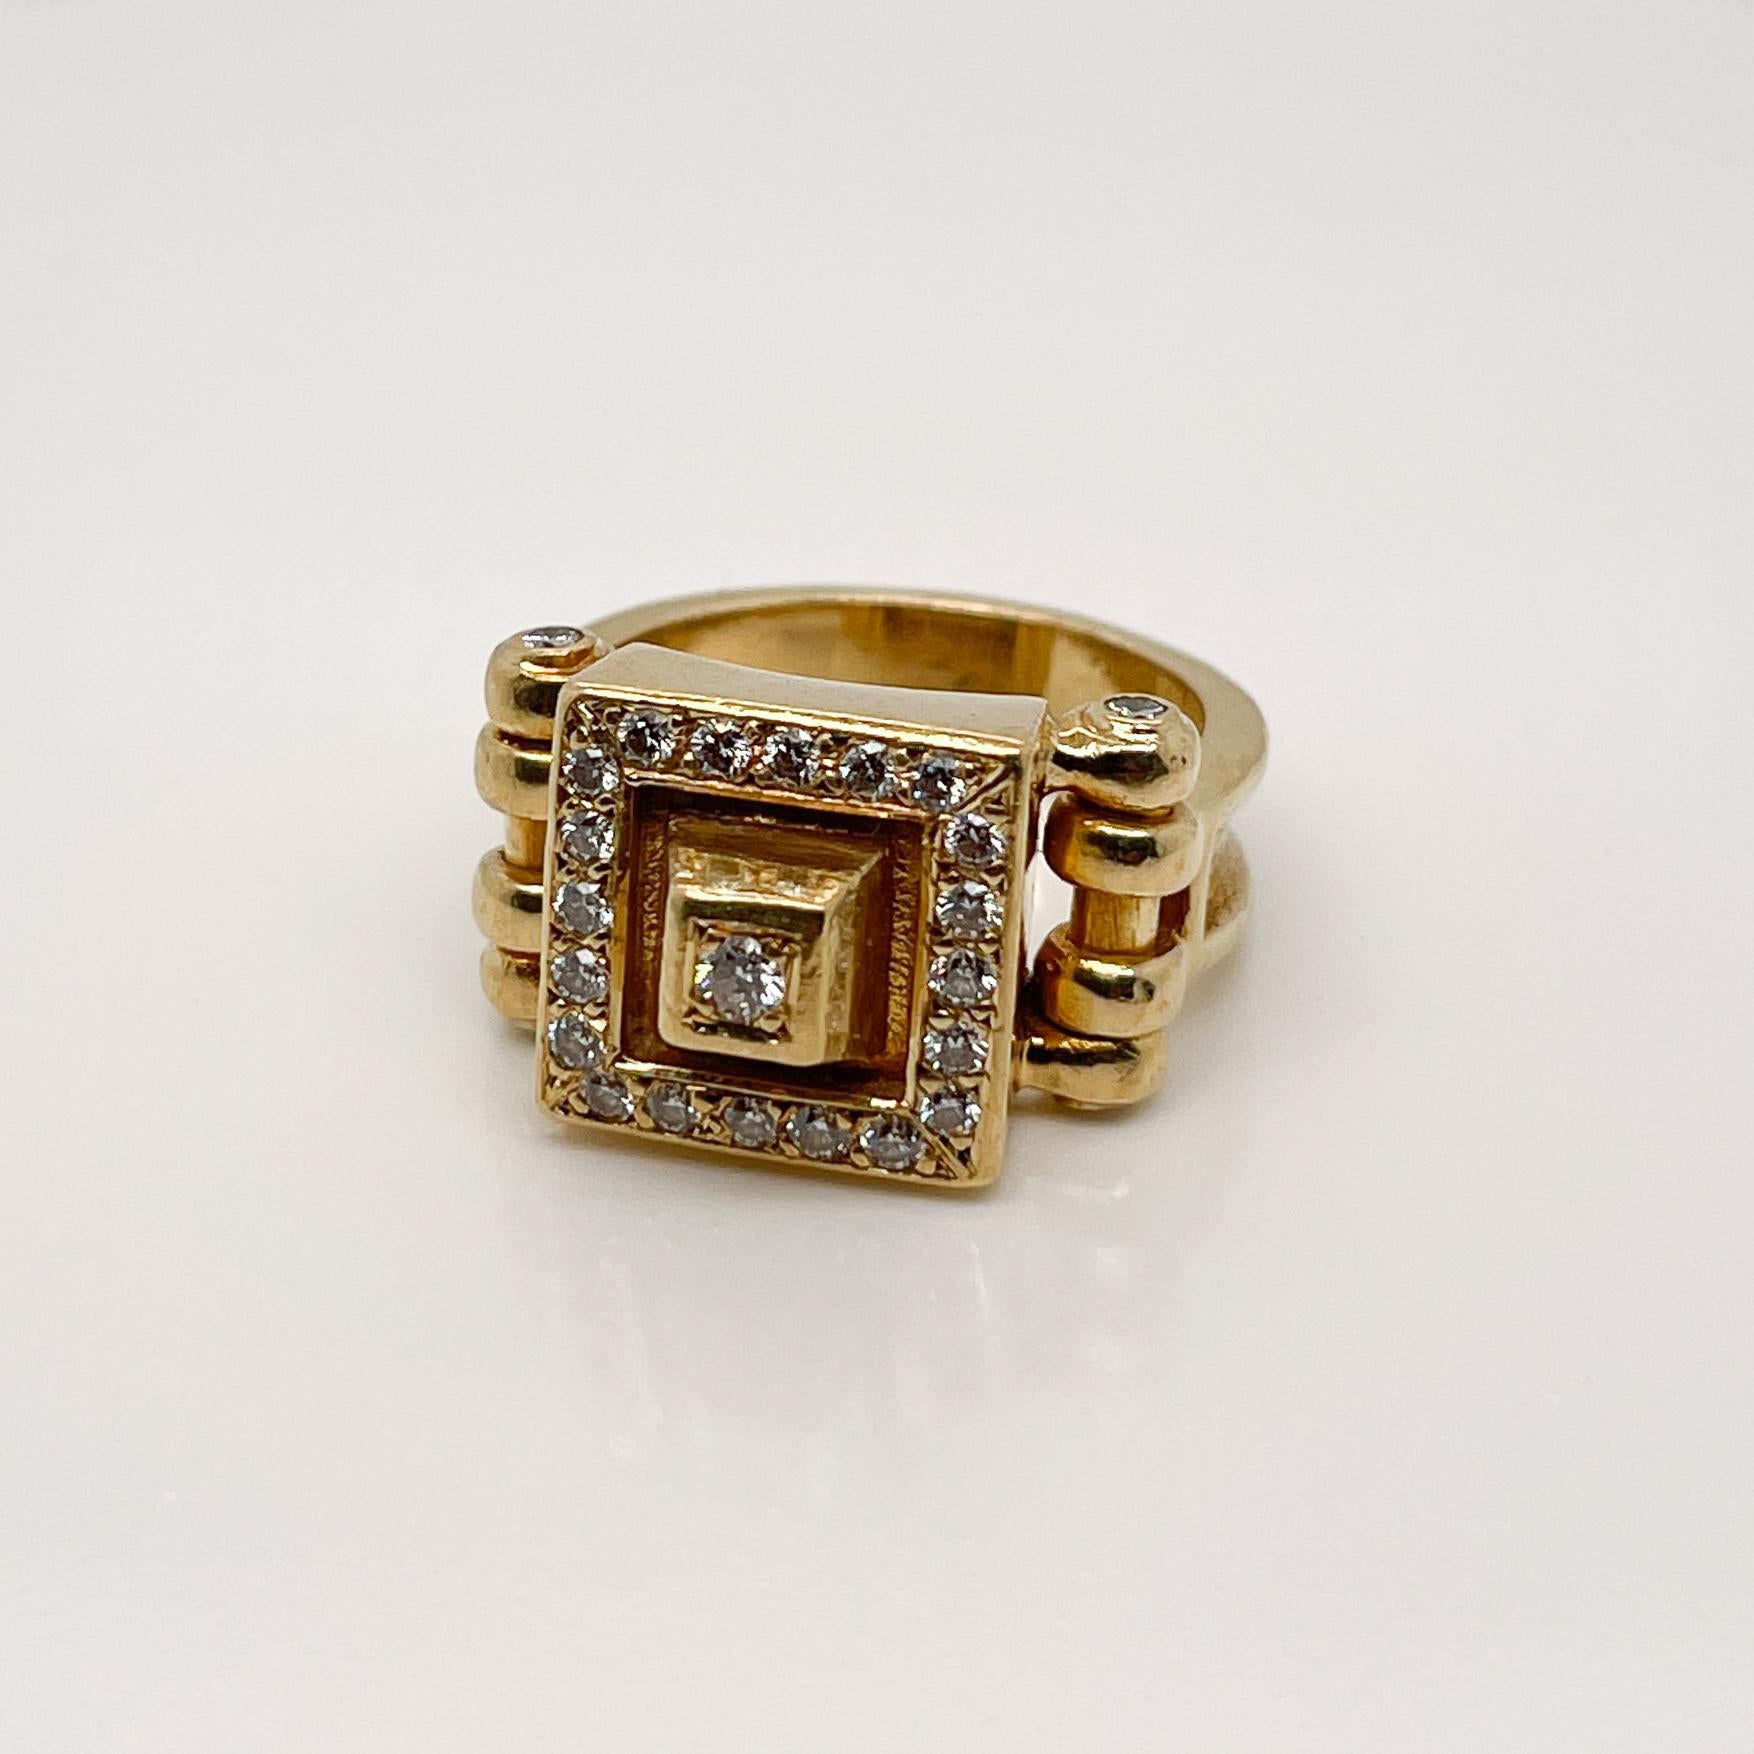 Ein sehr feiner signierter Designer-Ring aus 18 Karat Gold und Diamanten im Signet-Stil.

Im Art-Déco-Stil mit stilisiertem, pyramidenförmigem Kopf und durchgehend mit runden weißen Diamanten im Brillantschliff besetzt.

Unleserlich markiert und